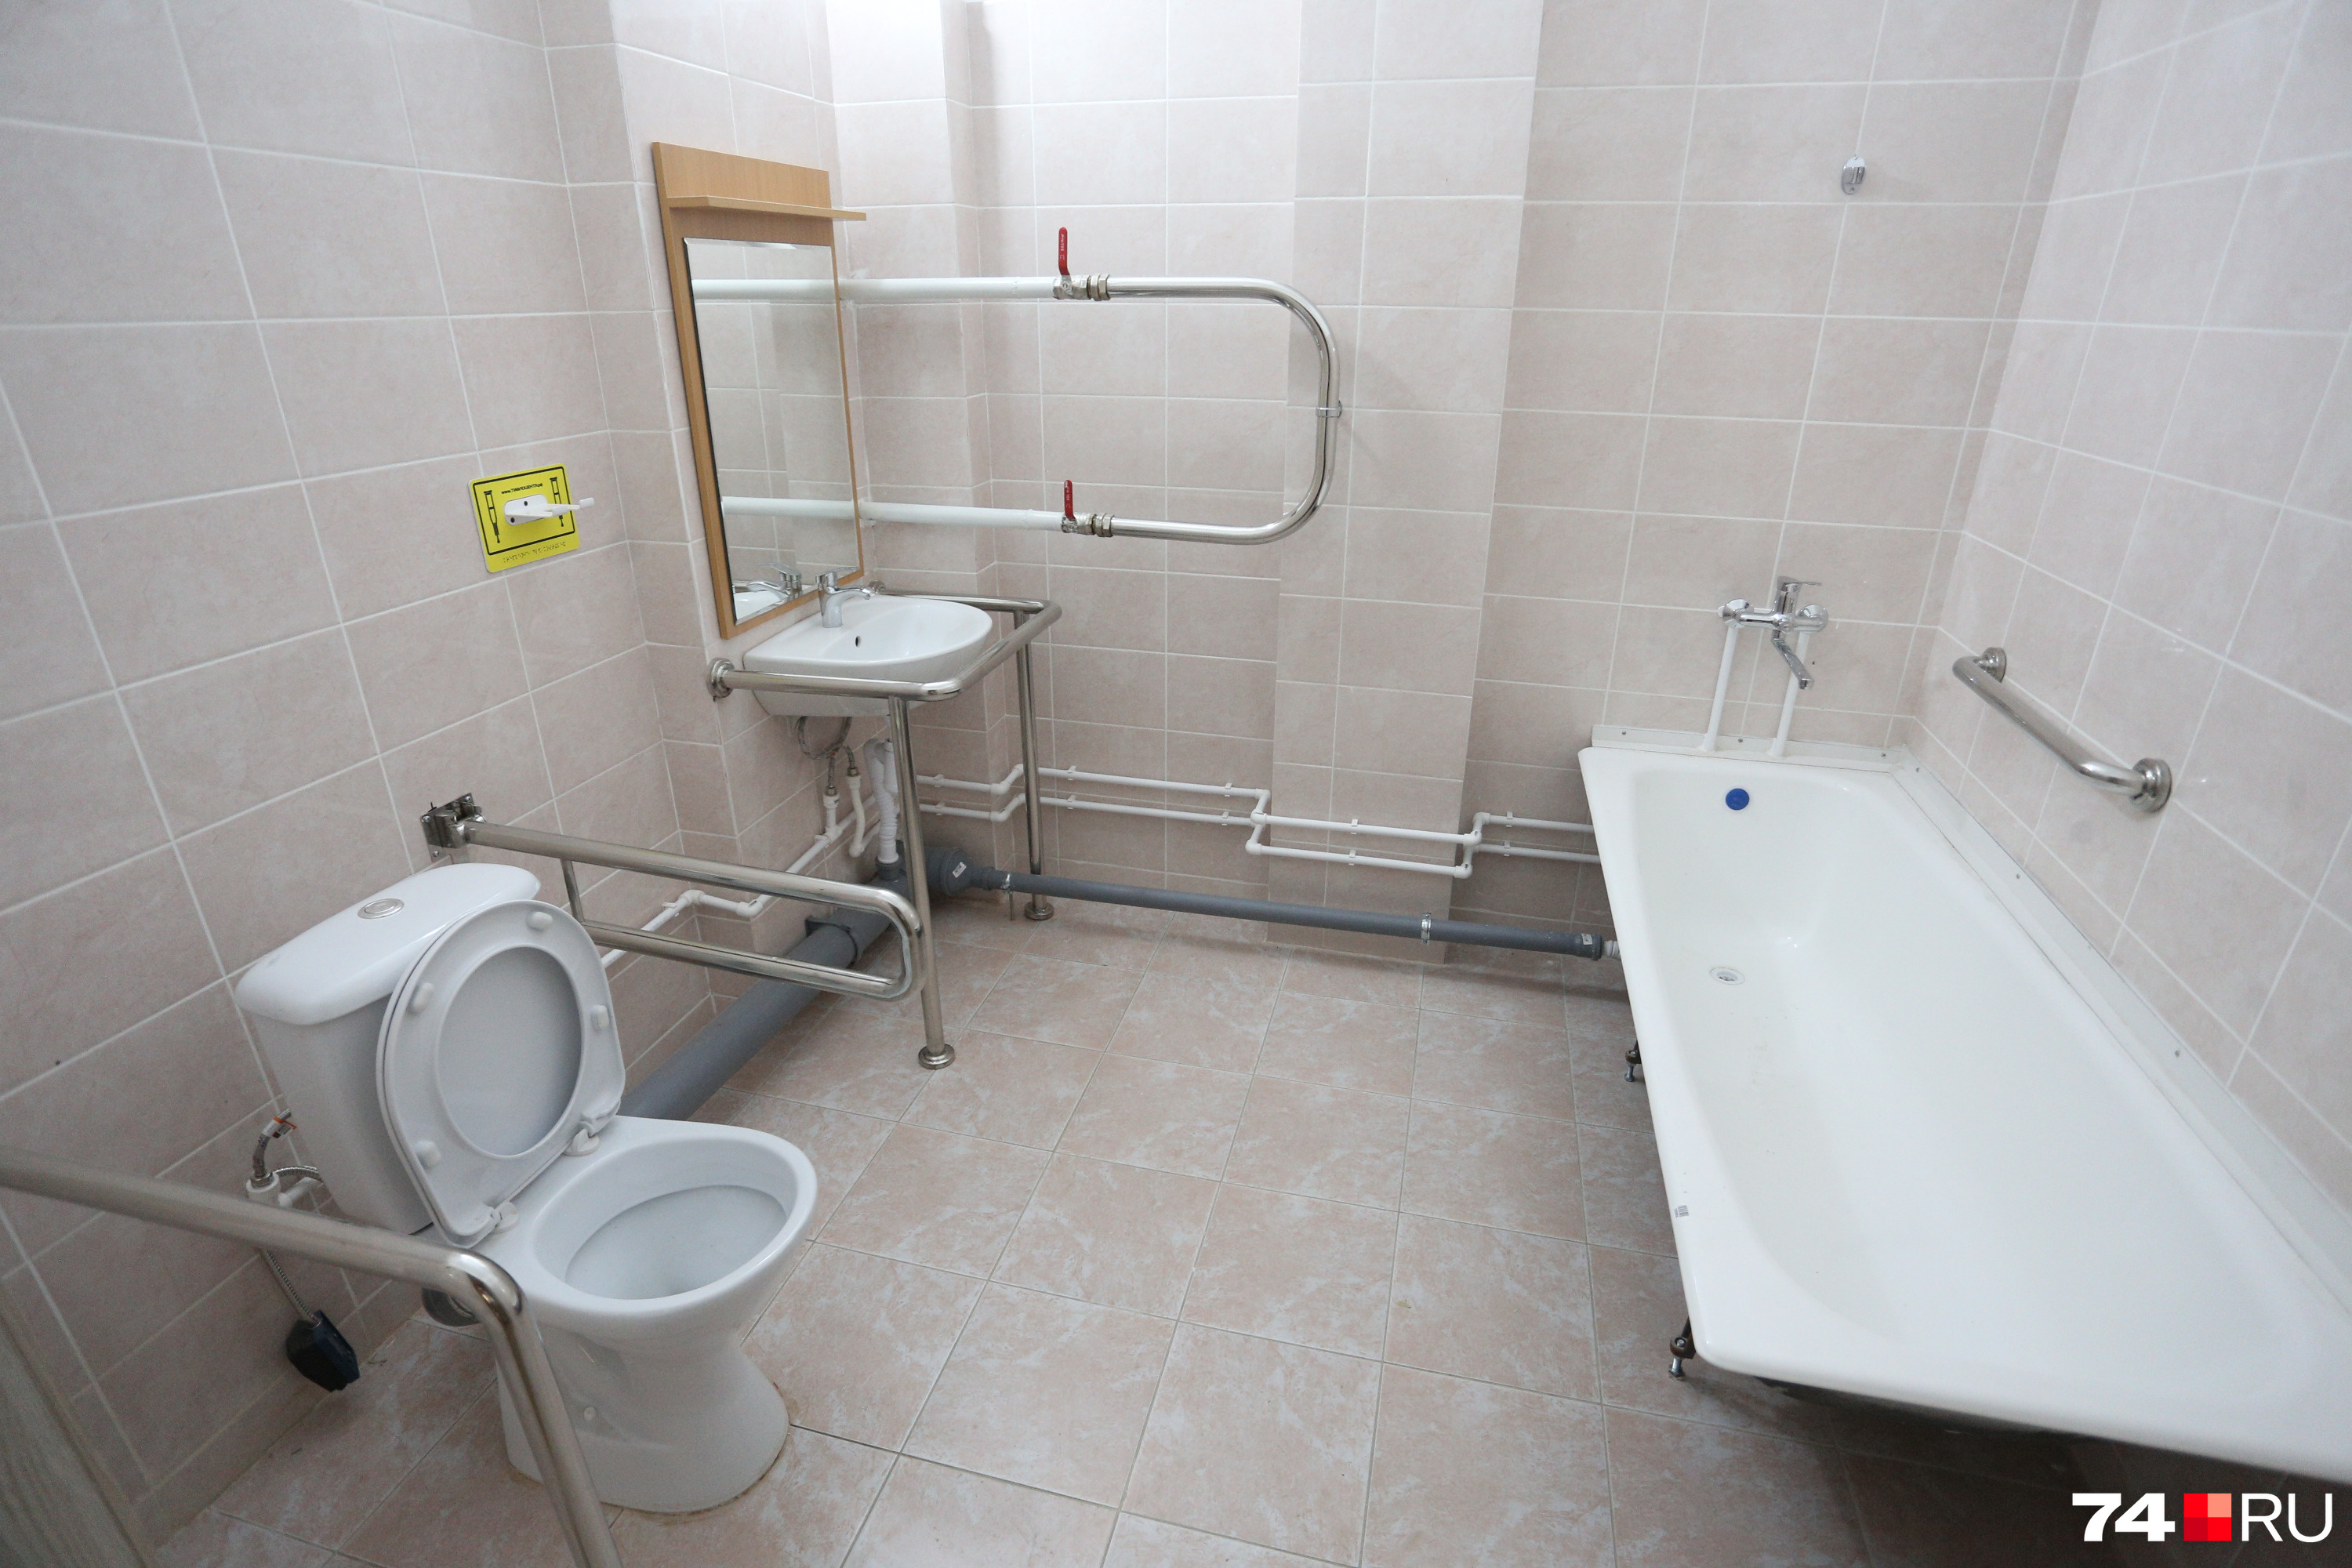 Ванная комната для инвалидов — со специальными поручнями